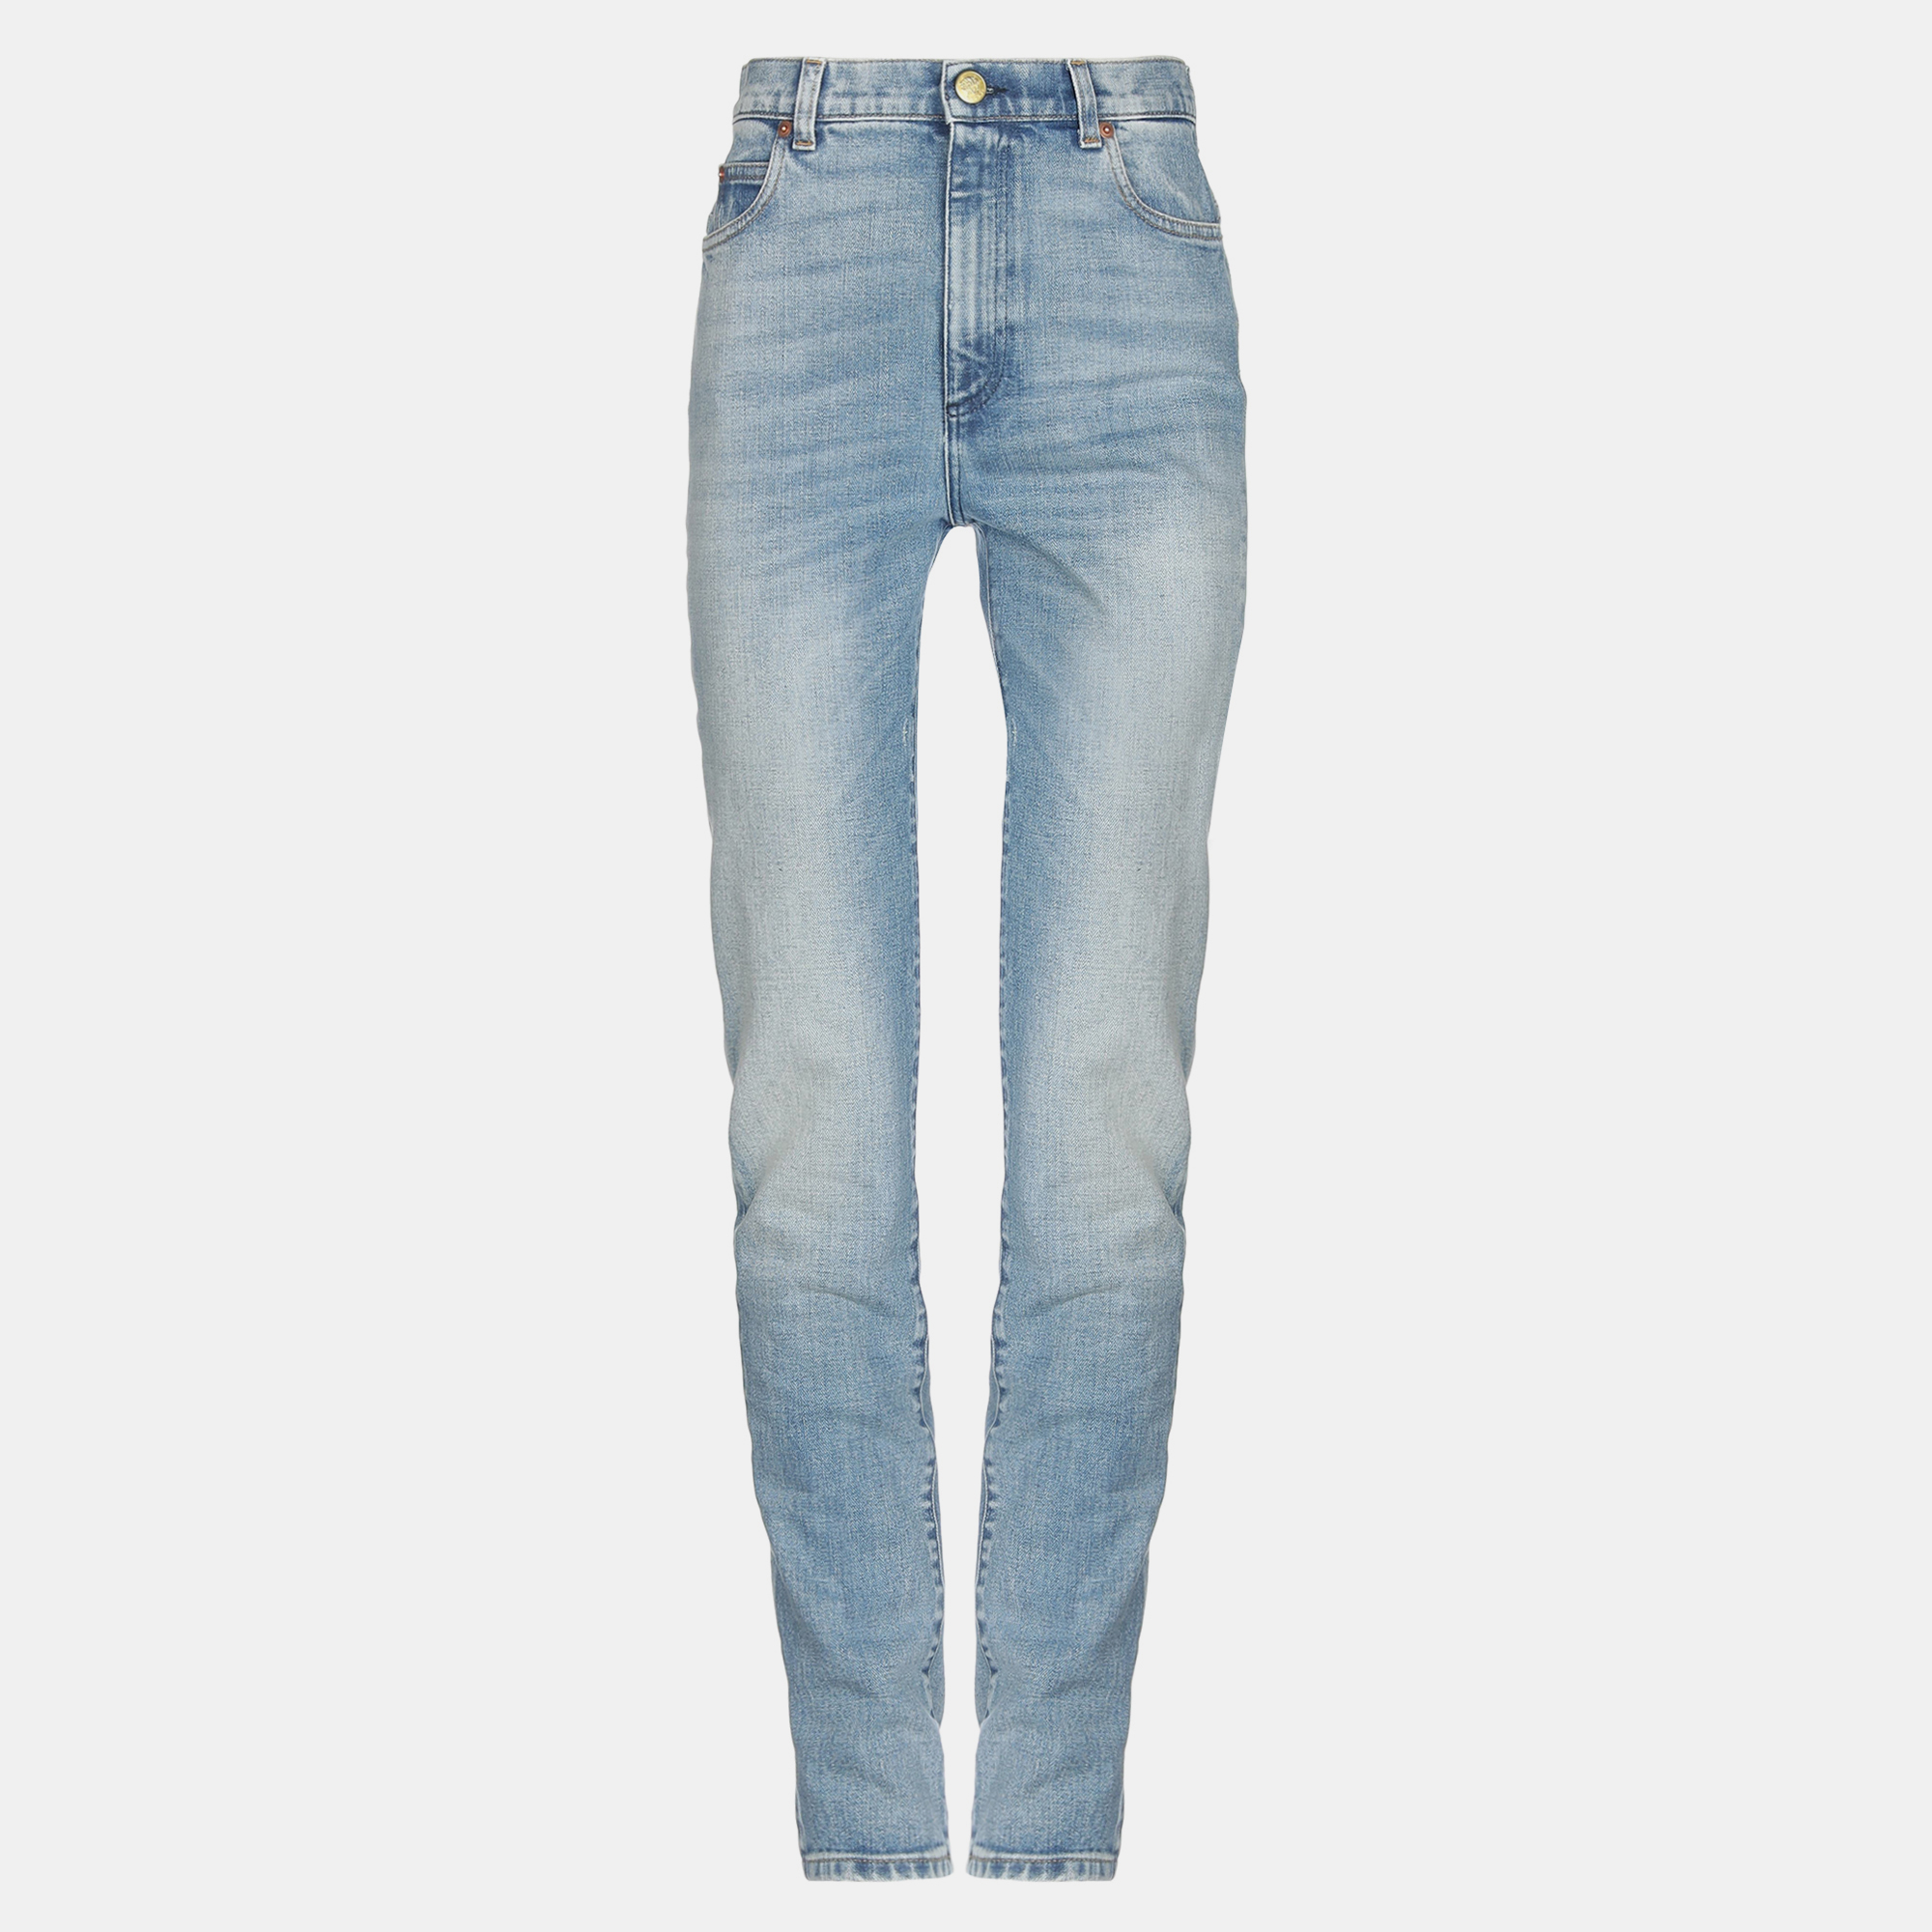 Gucci cotton jeans 26